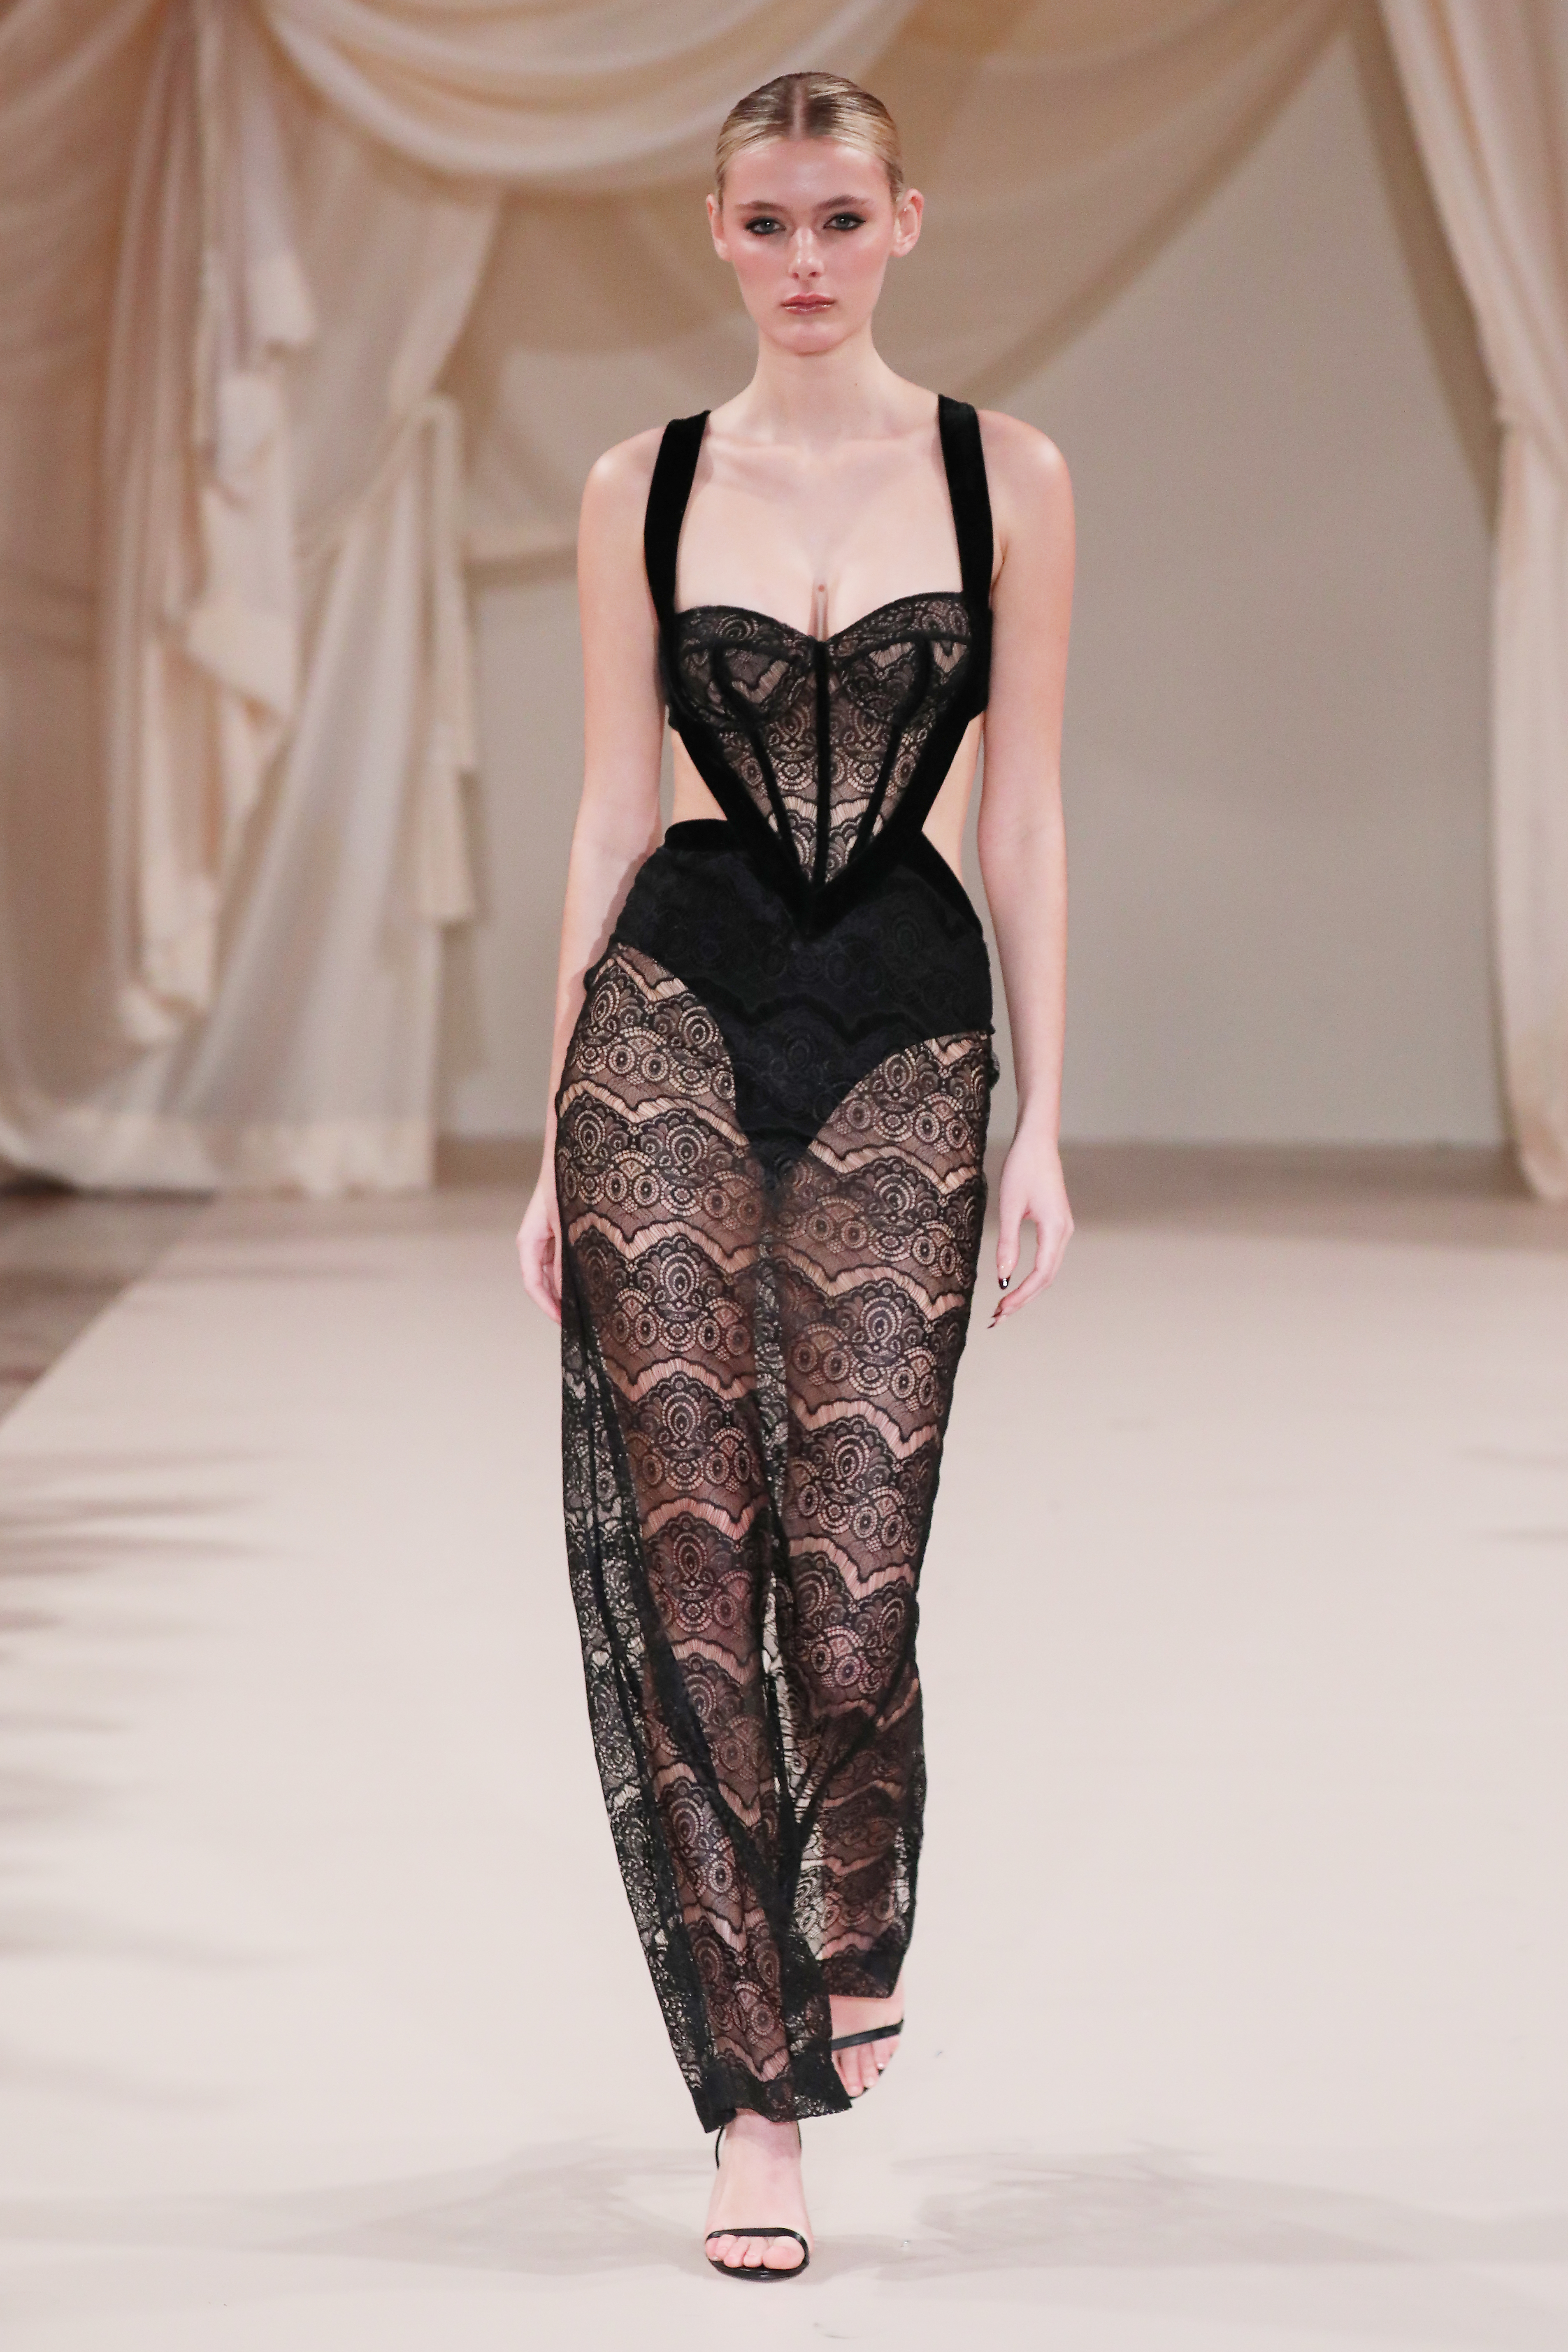 Desfile da Patbo na semana de moda de Nova York em fevereiro de 2023. Modelo usando look preto com renda e transparência